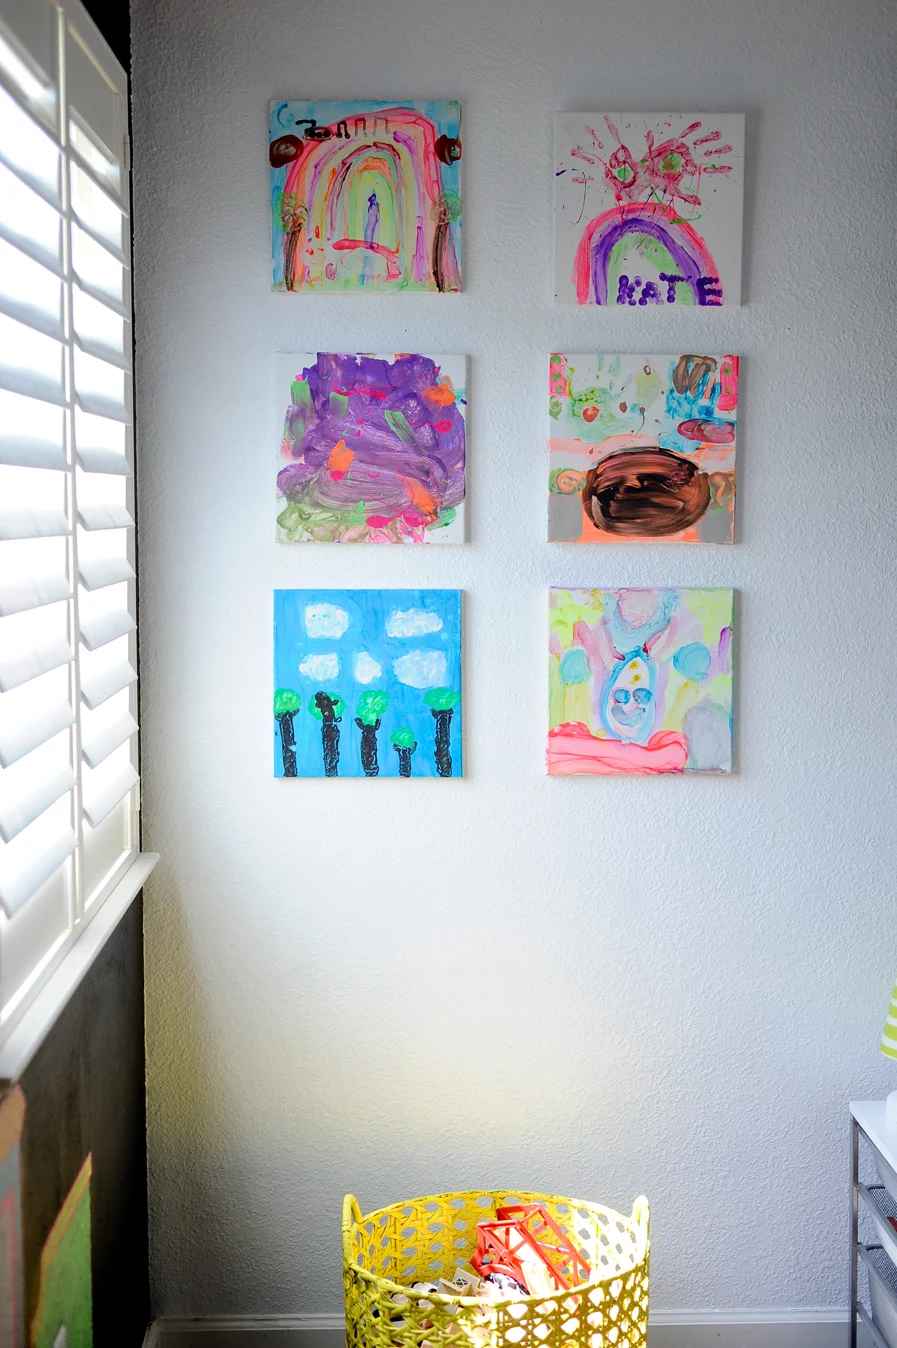 Kids Art Display in Playroom - Project Nursery